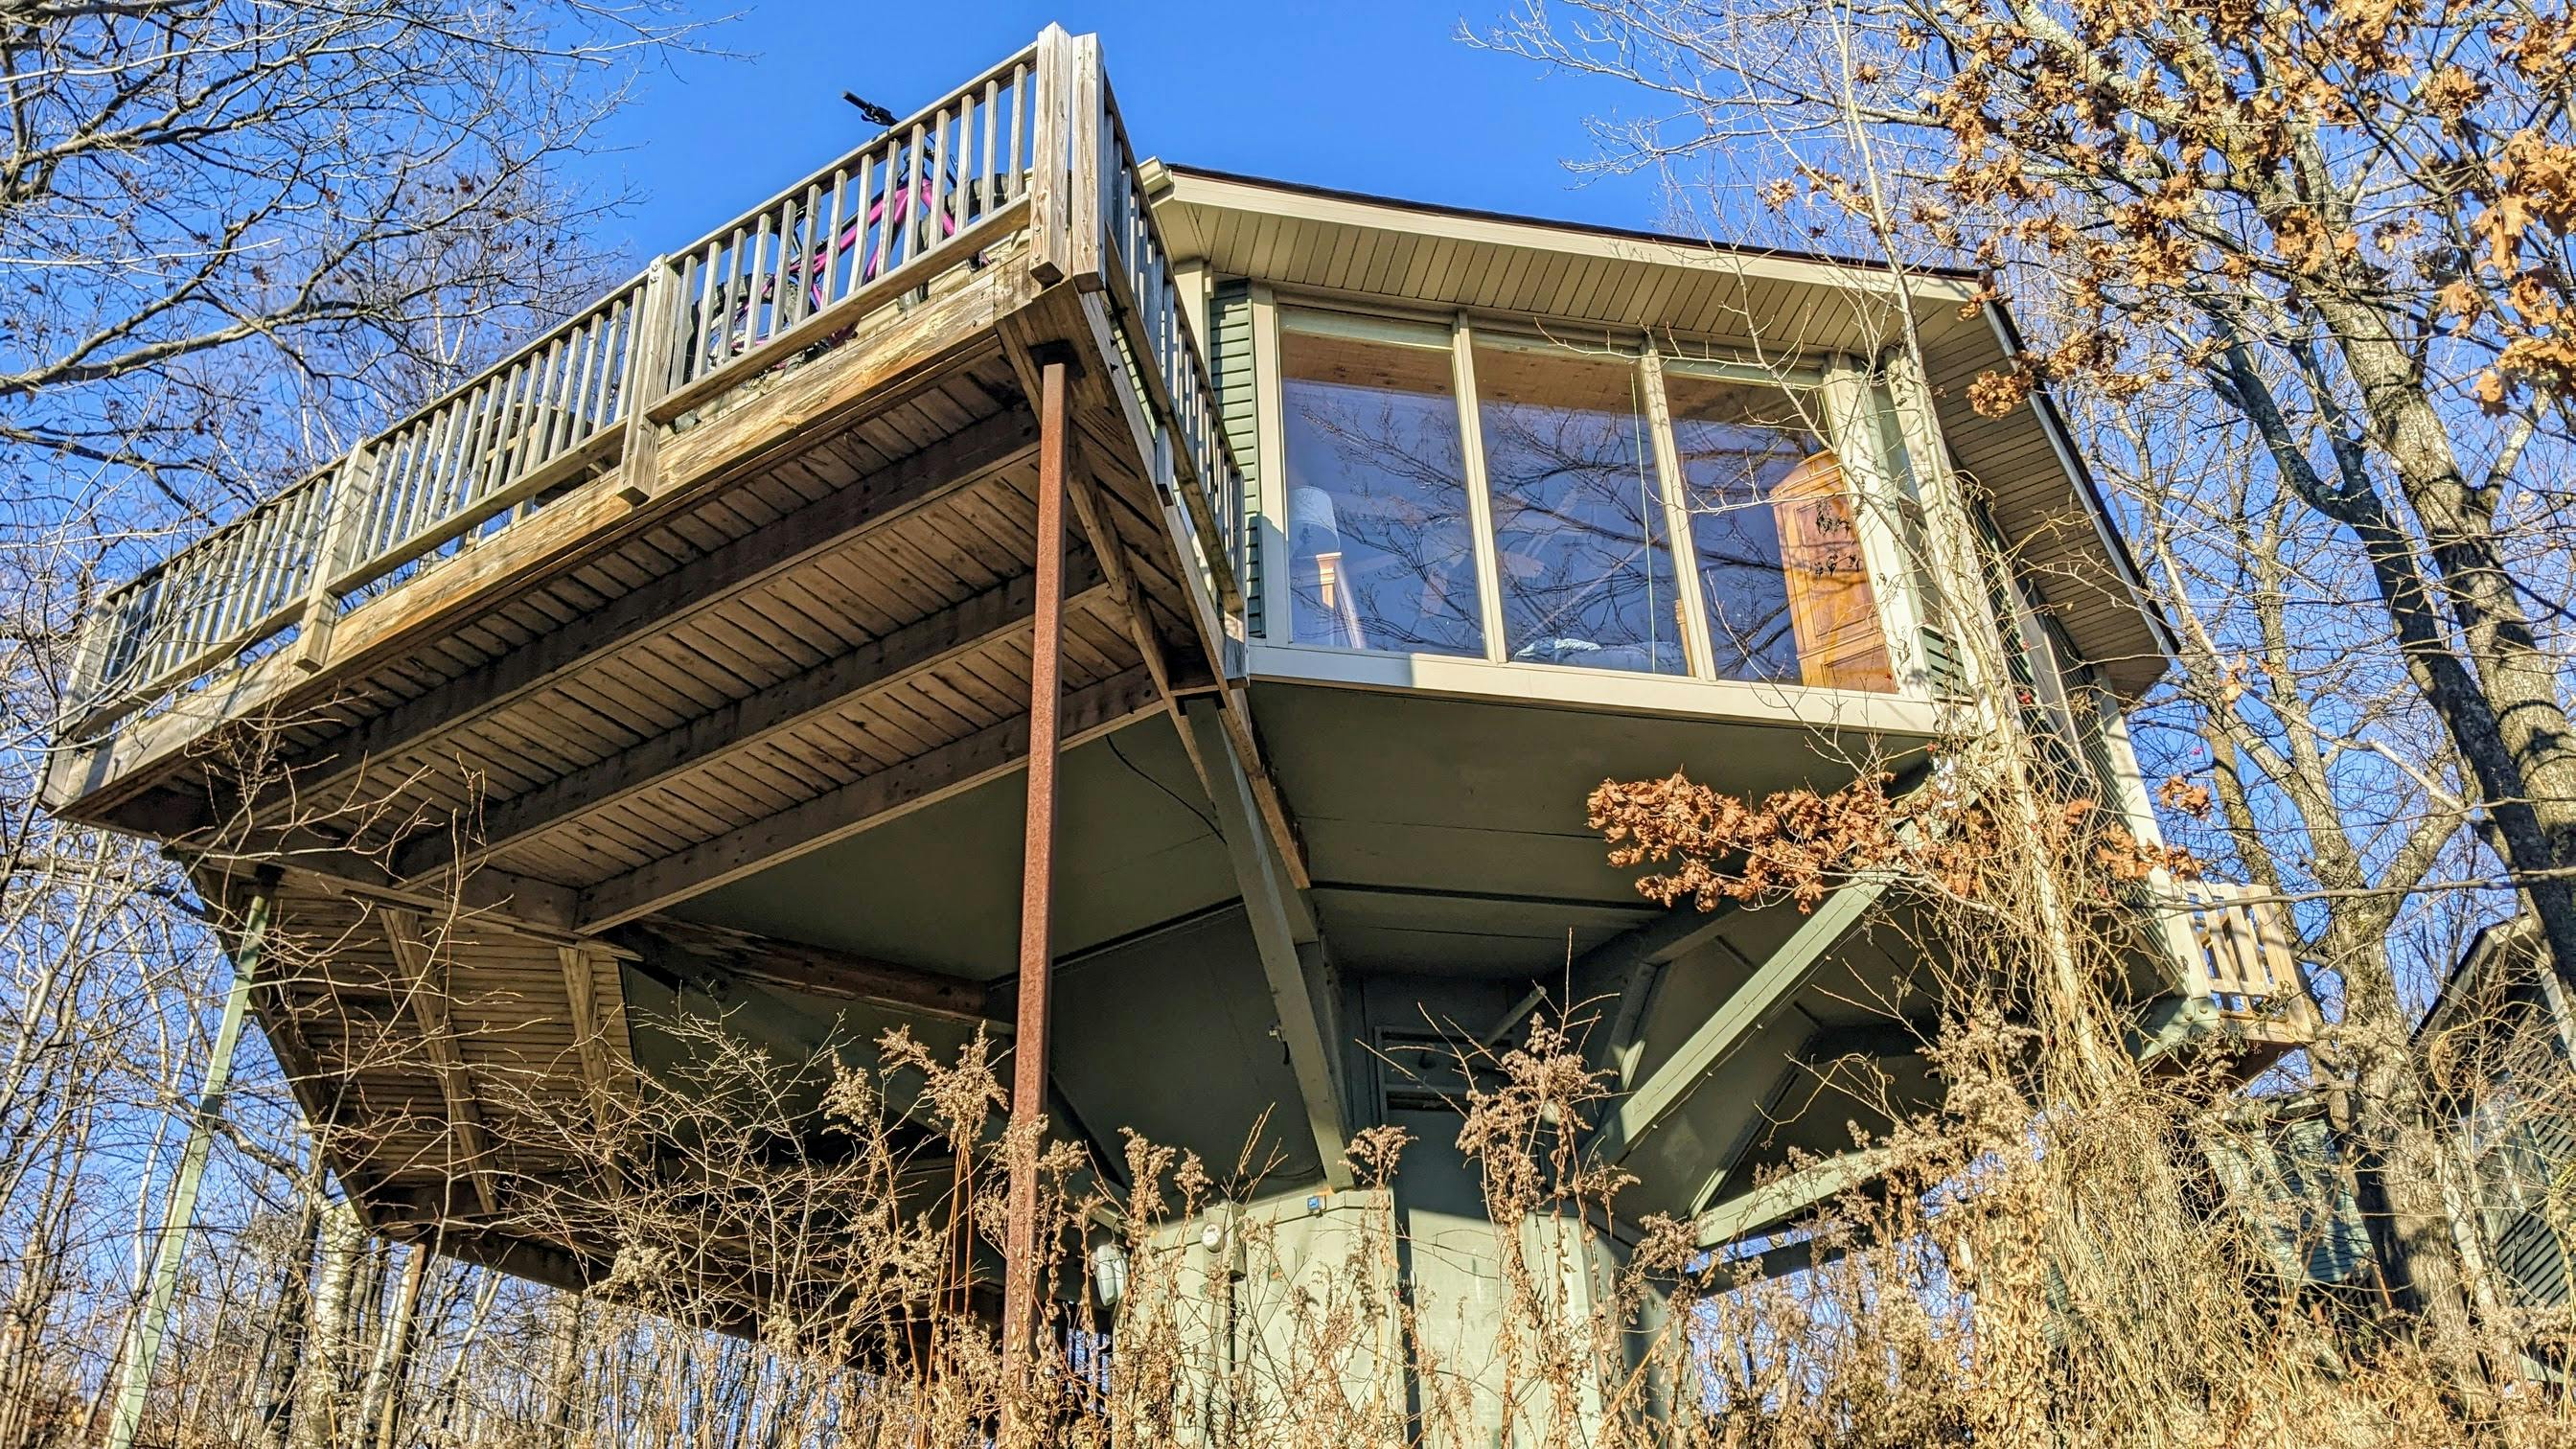 The Ridgewood villa at Mountain Villas on Spirit Mountain, Duluth.